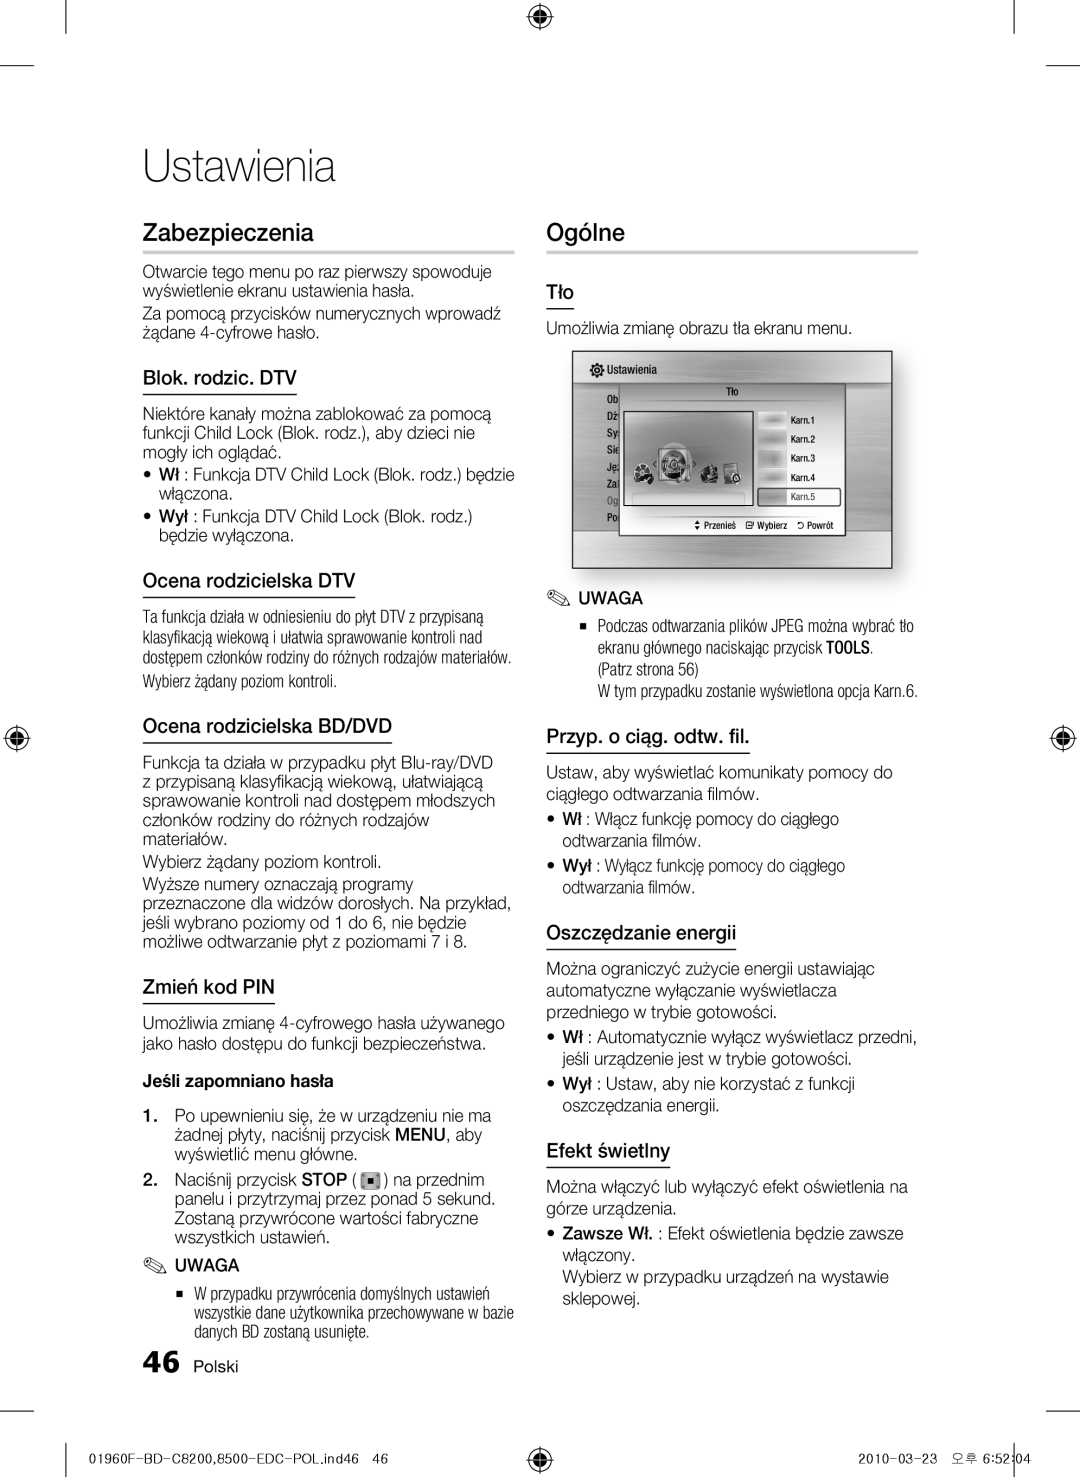 Samsung BD-C8500/XEN manual Zabezpieczenia, Ogólne, Blok. rodzic. DTV, Ocena rodzicielska DTV, Ocena rodzicielska BD/DVD 